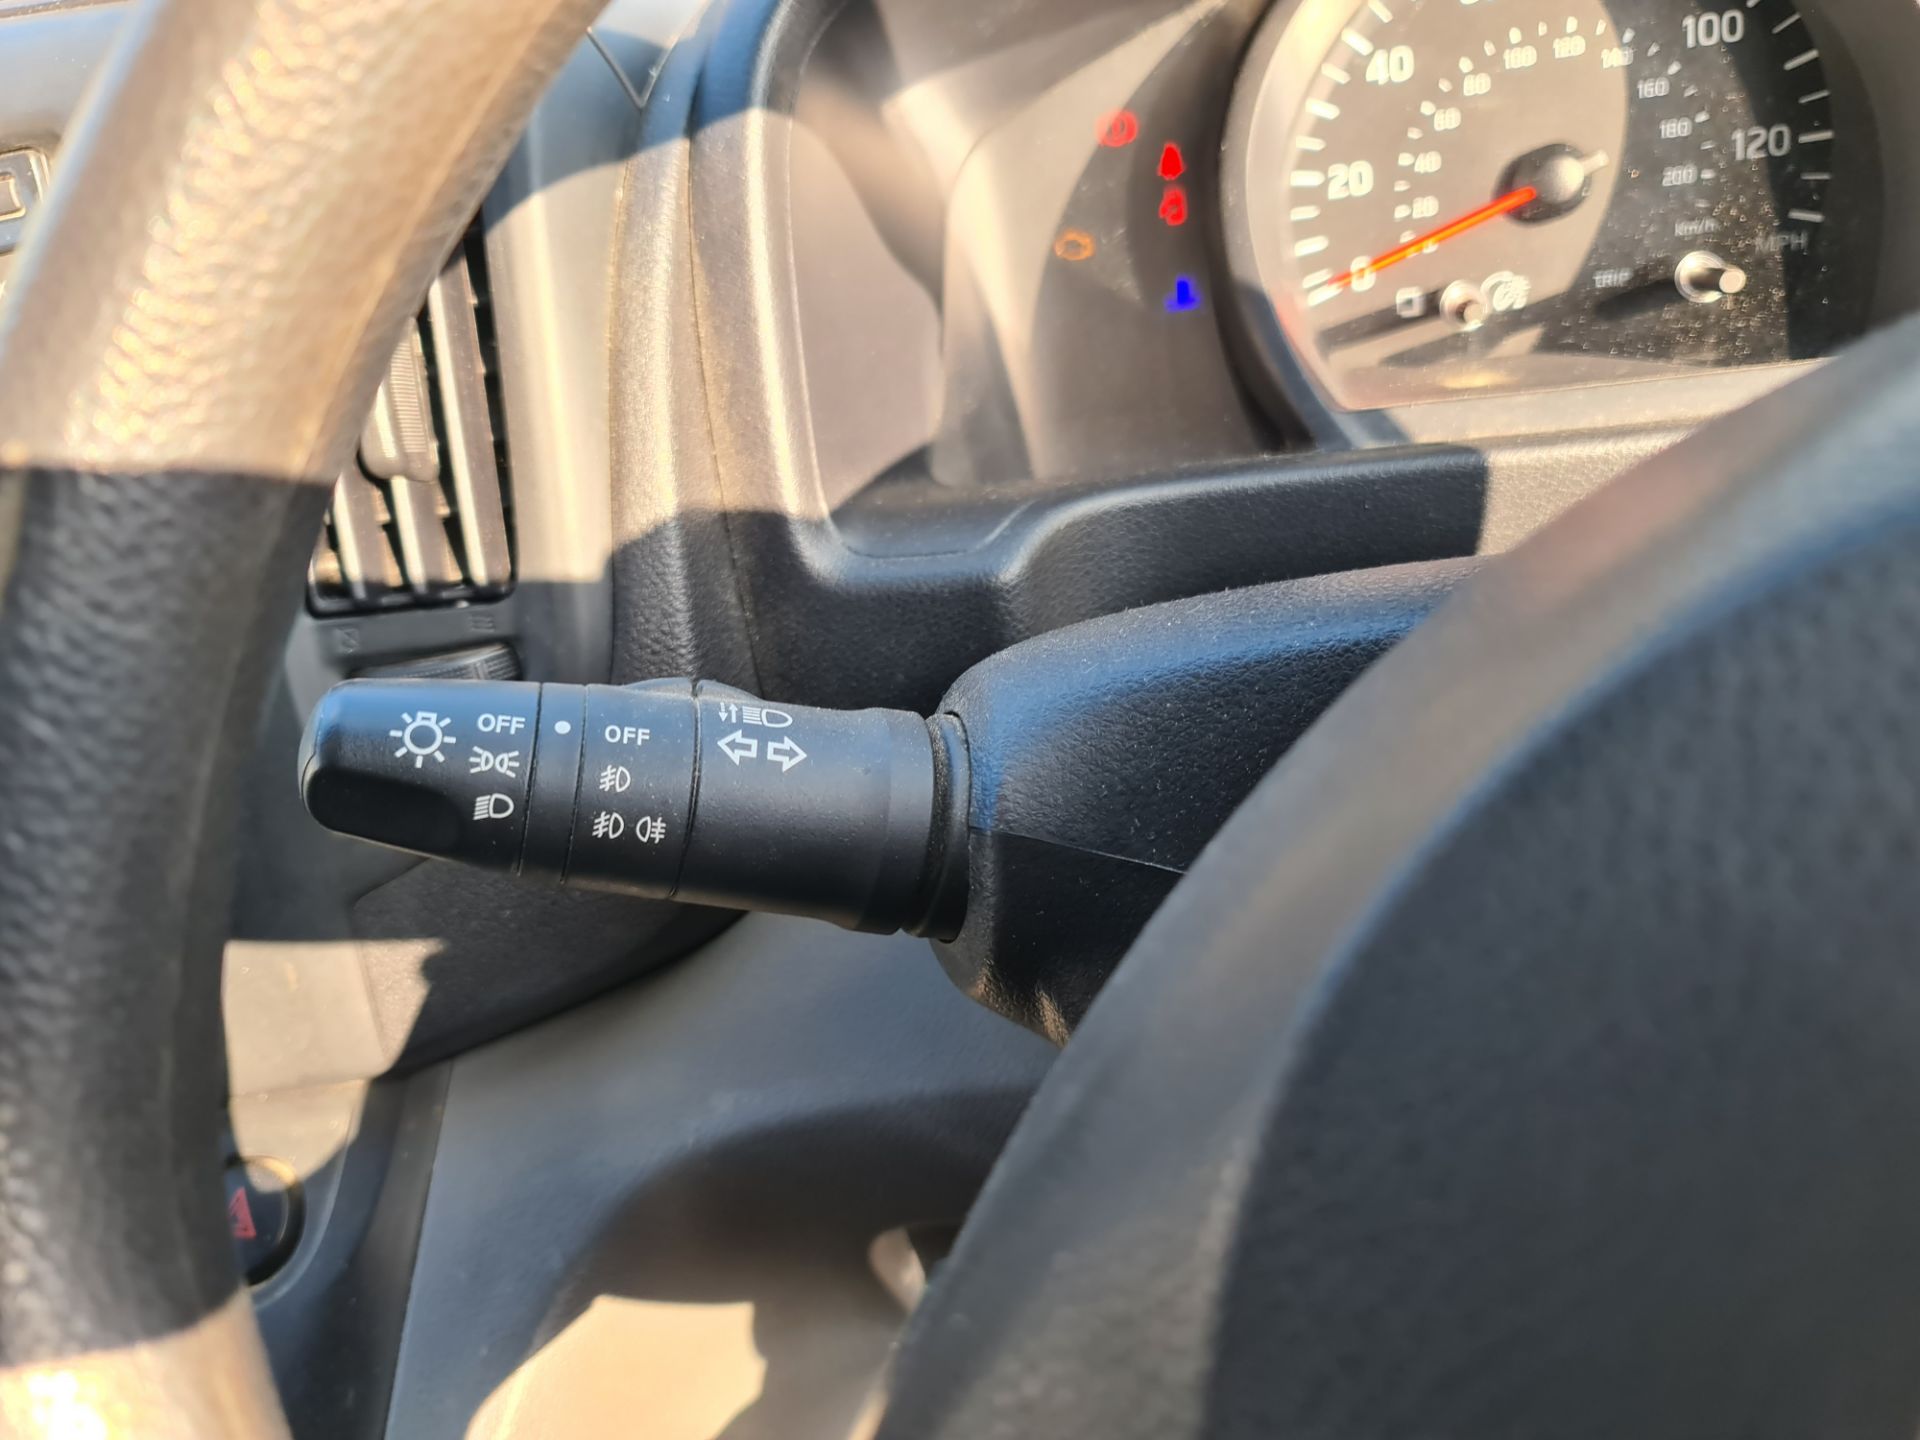 2018 Nissan NV200 Acenta DCI car derived van - Image 88 of 93